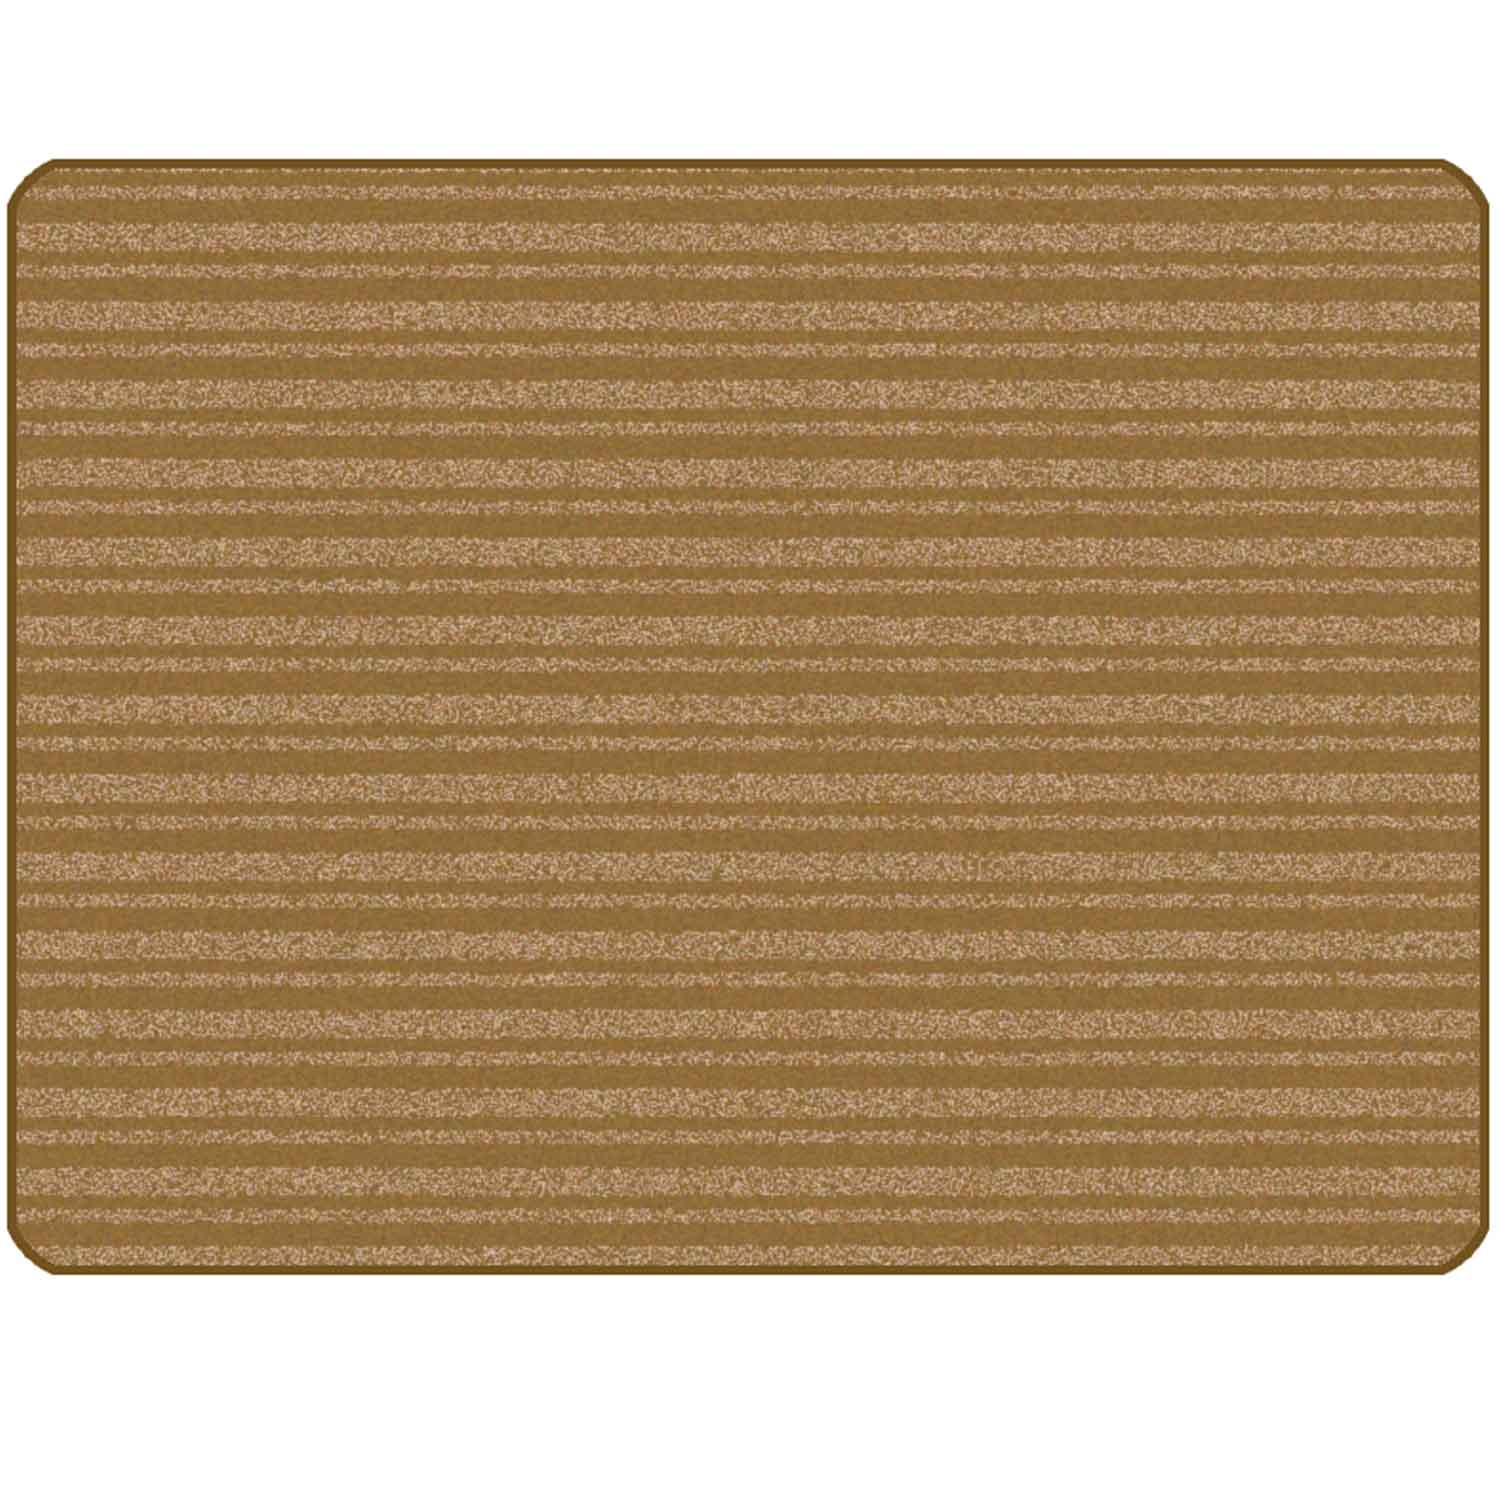 KIDSoft Subtle Stripes Rug Brown Tan 6' x 9'